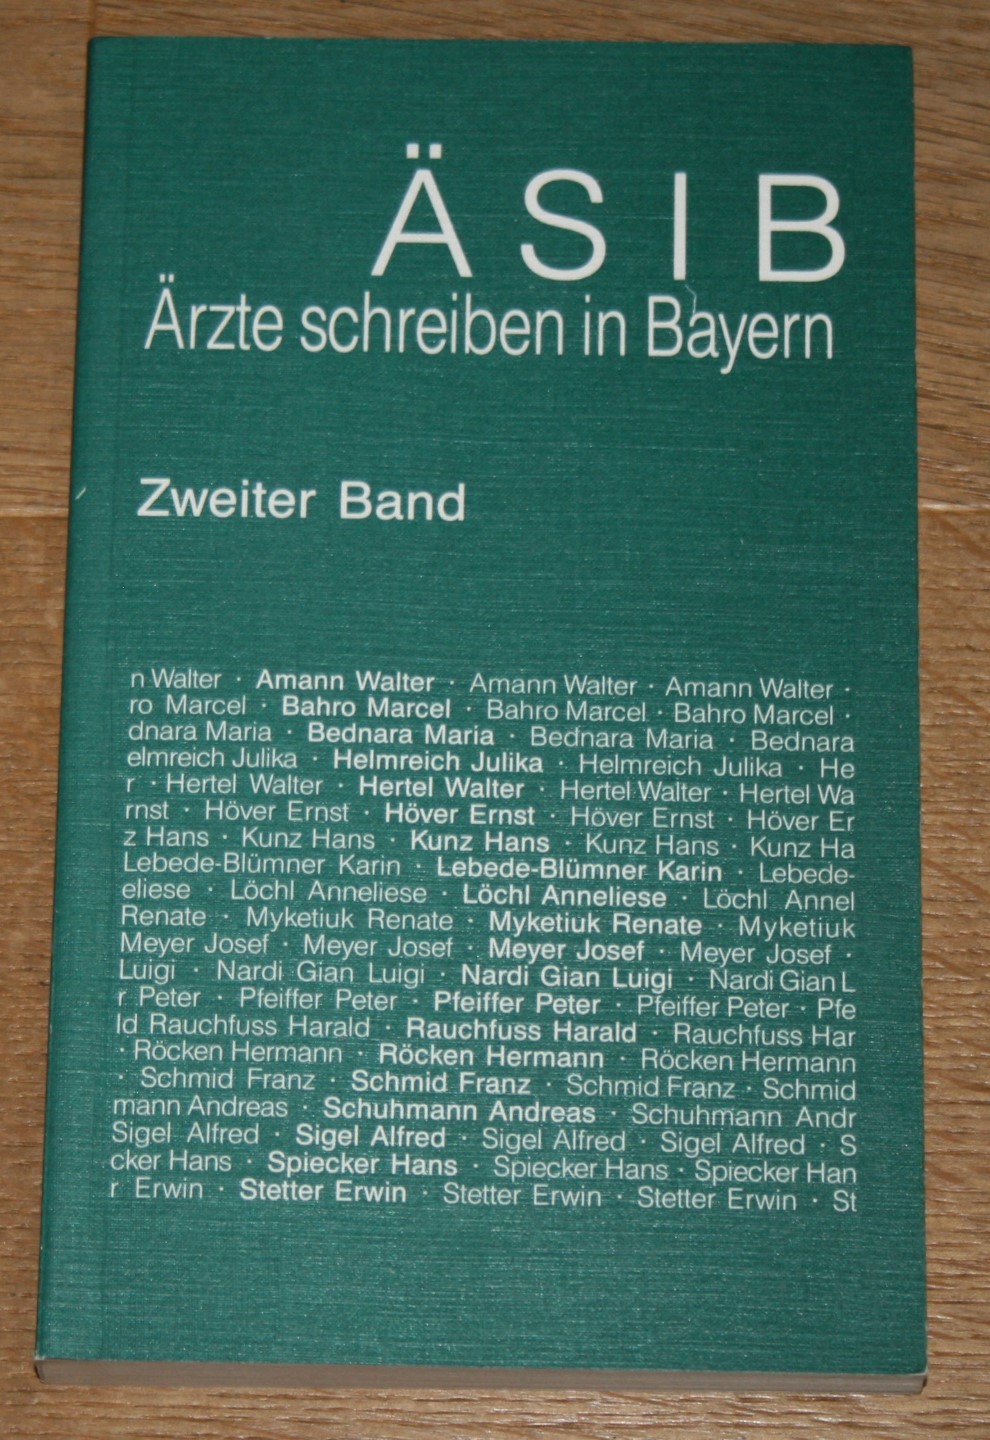 ÄSIB II. Ärzte schreiben in Bayern. Zweiter (2.) Band. - Pfeiffer, Peter und Harald Rauchfuss